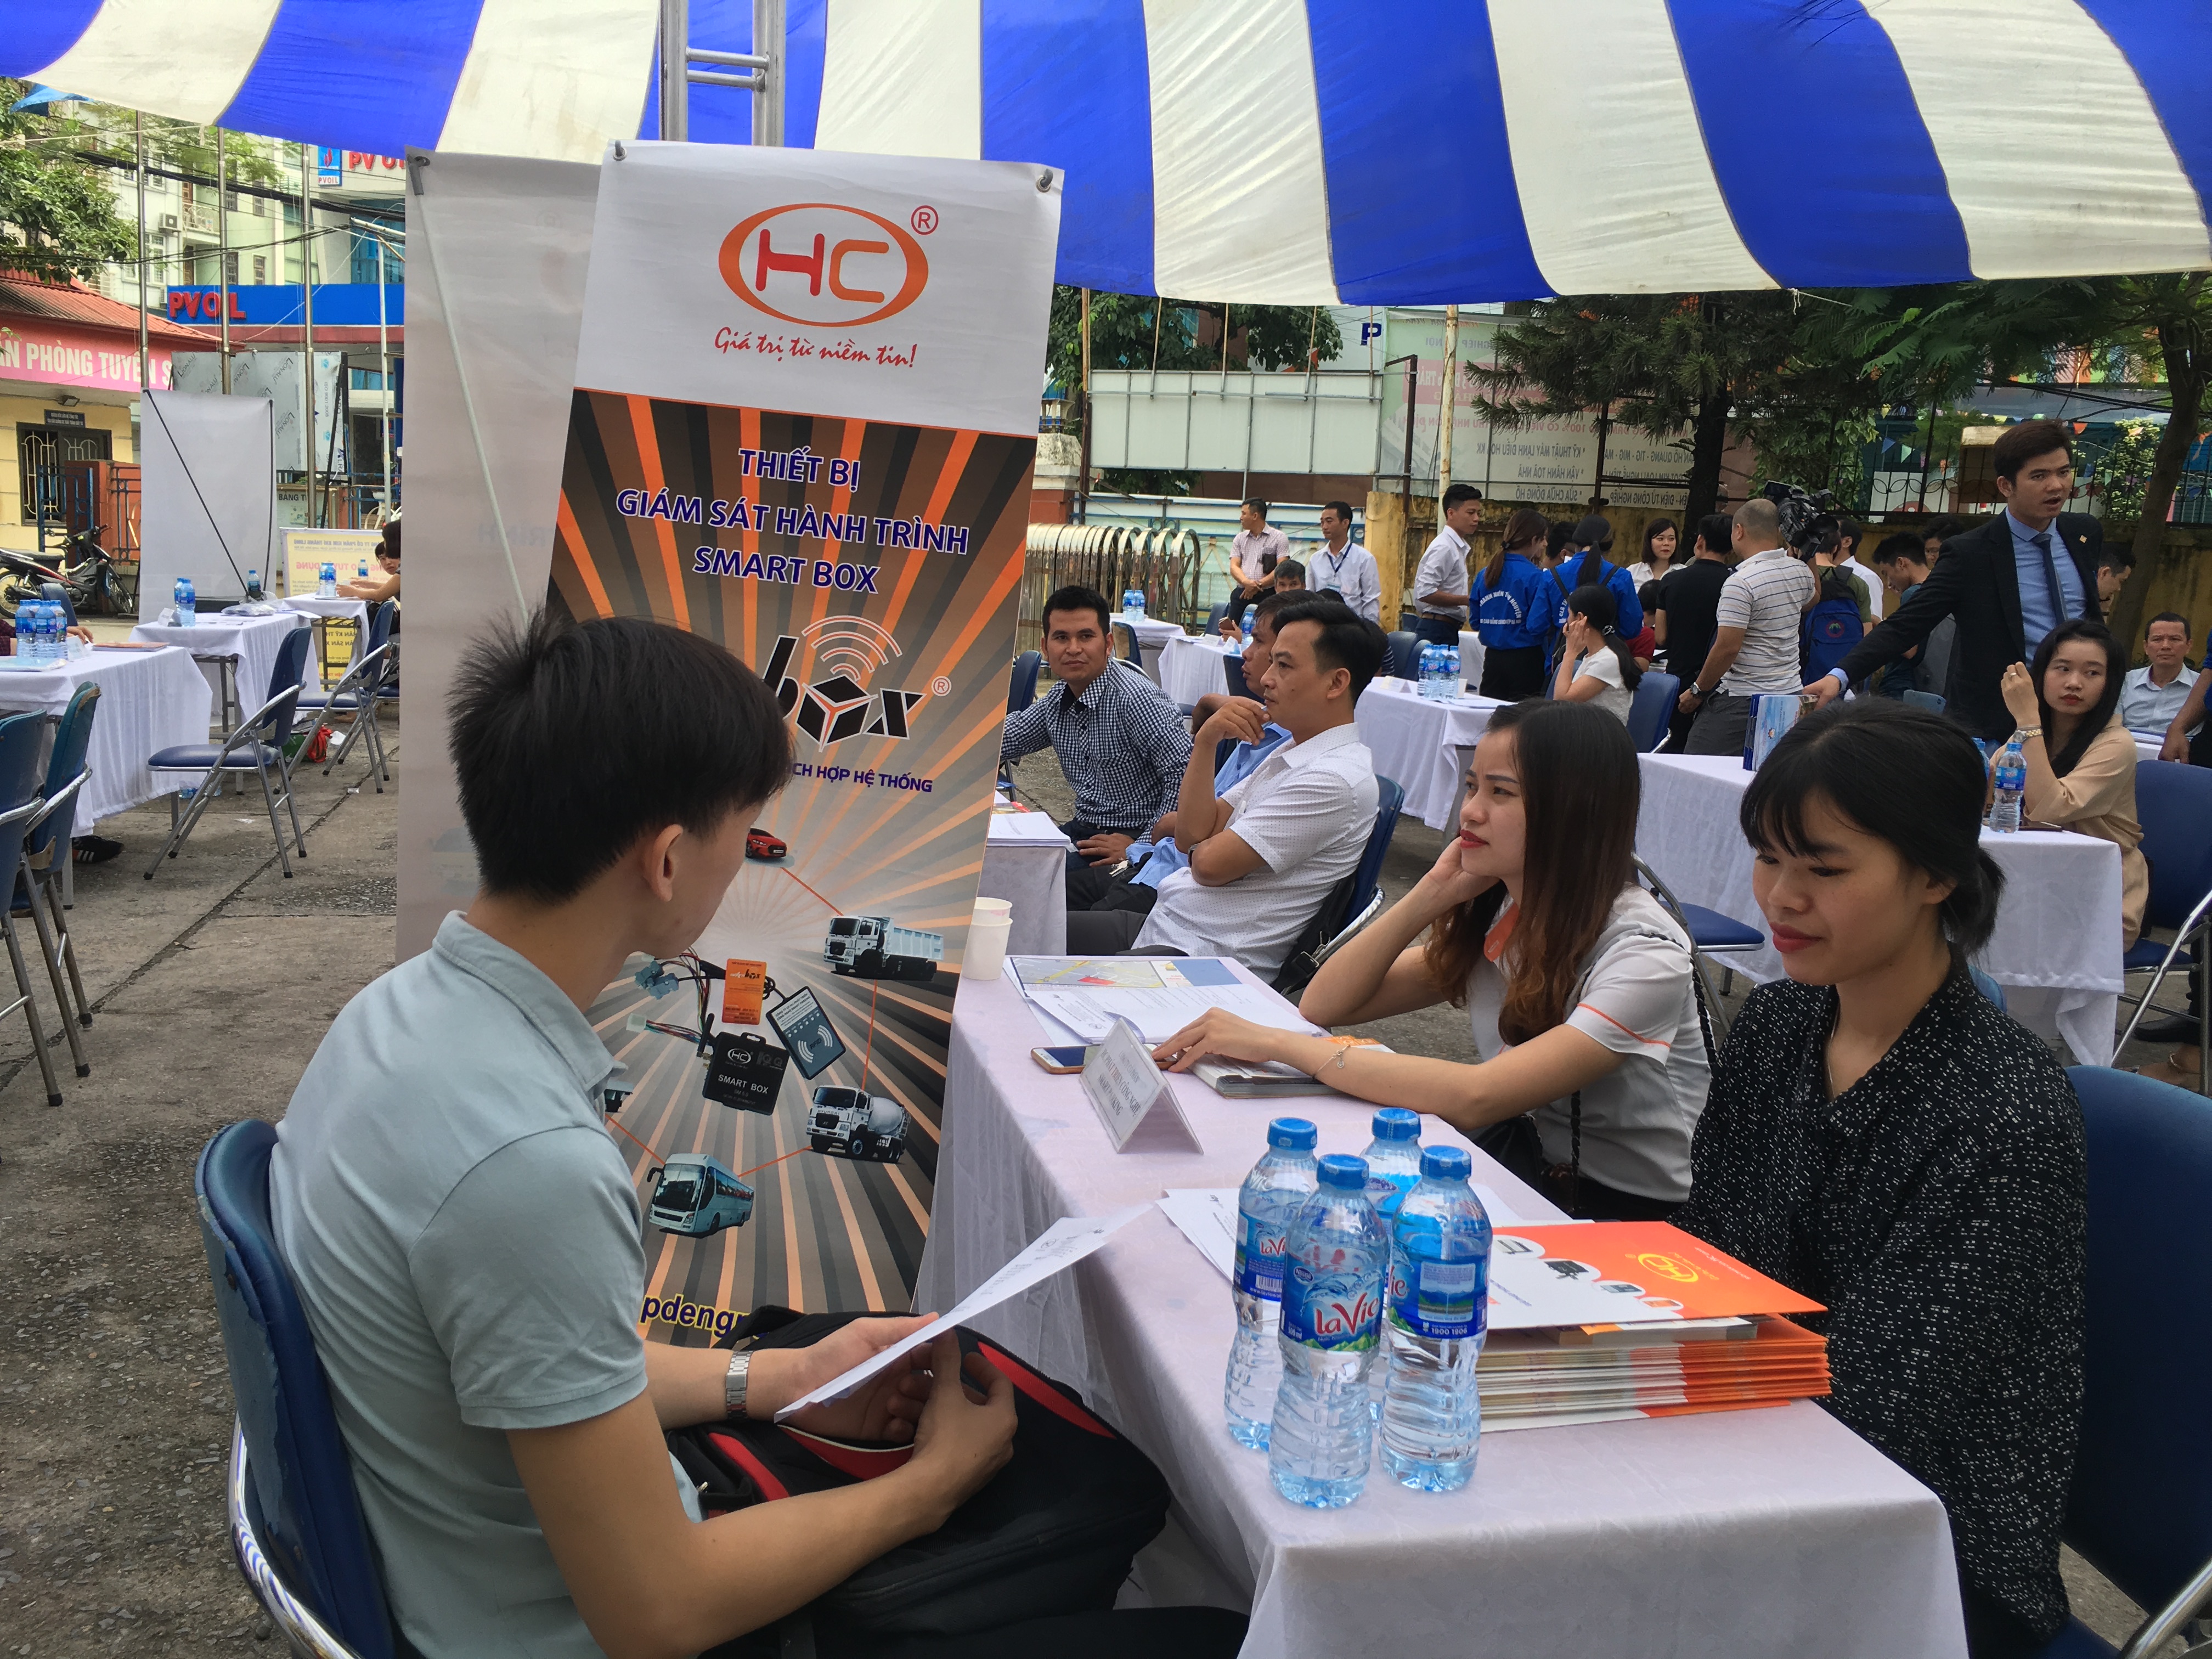 Ngày hội việc làm 2018 trường CĐ Công nghiệp Hà Nội: Cầu nối tạo việc làm hiệu quả giữa doanh nghiệp và sinh viên